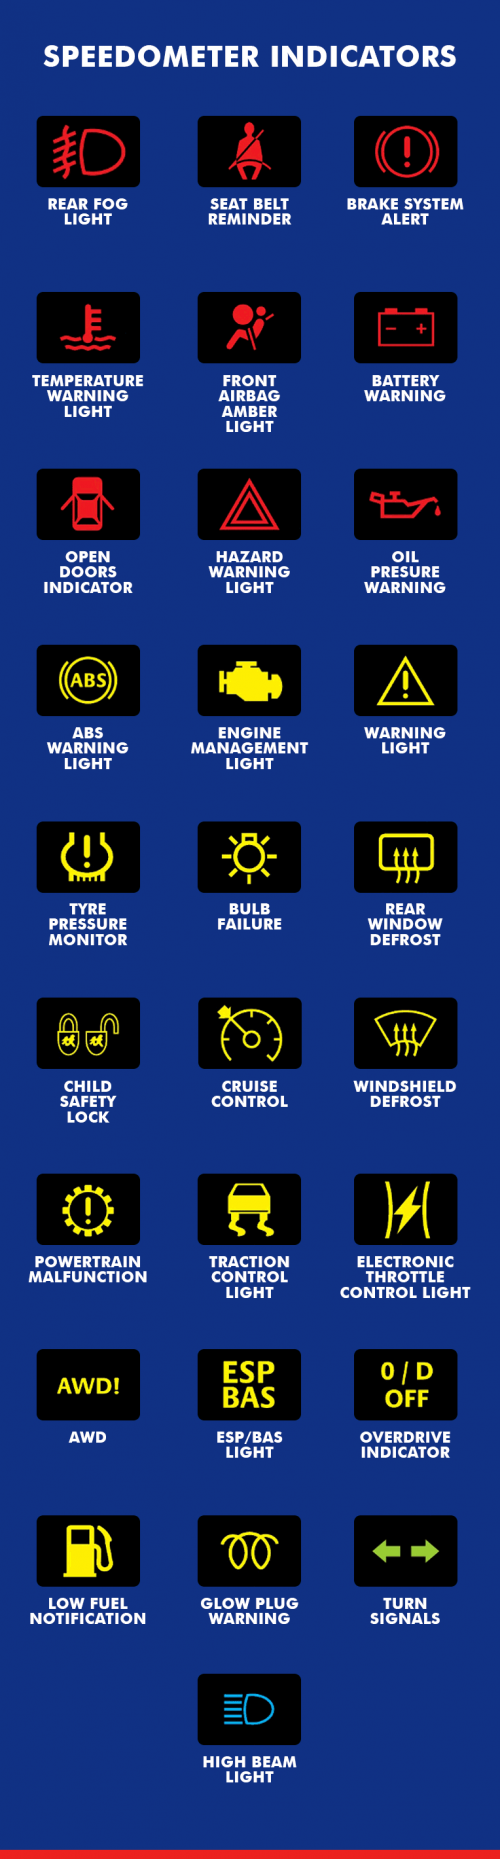 Toyota Dashboard Warning Symbols